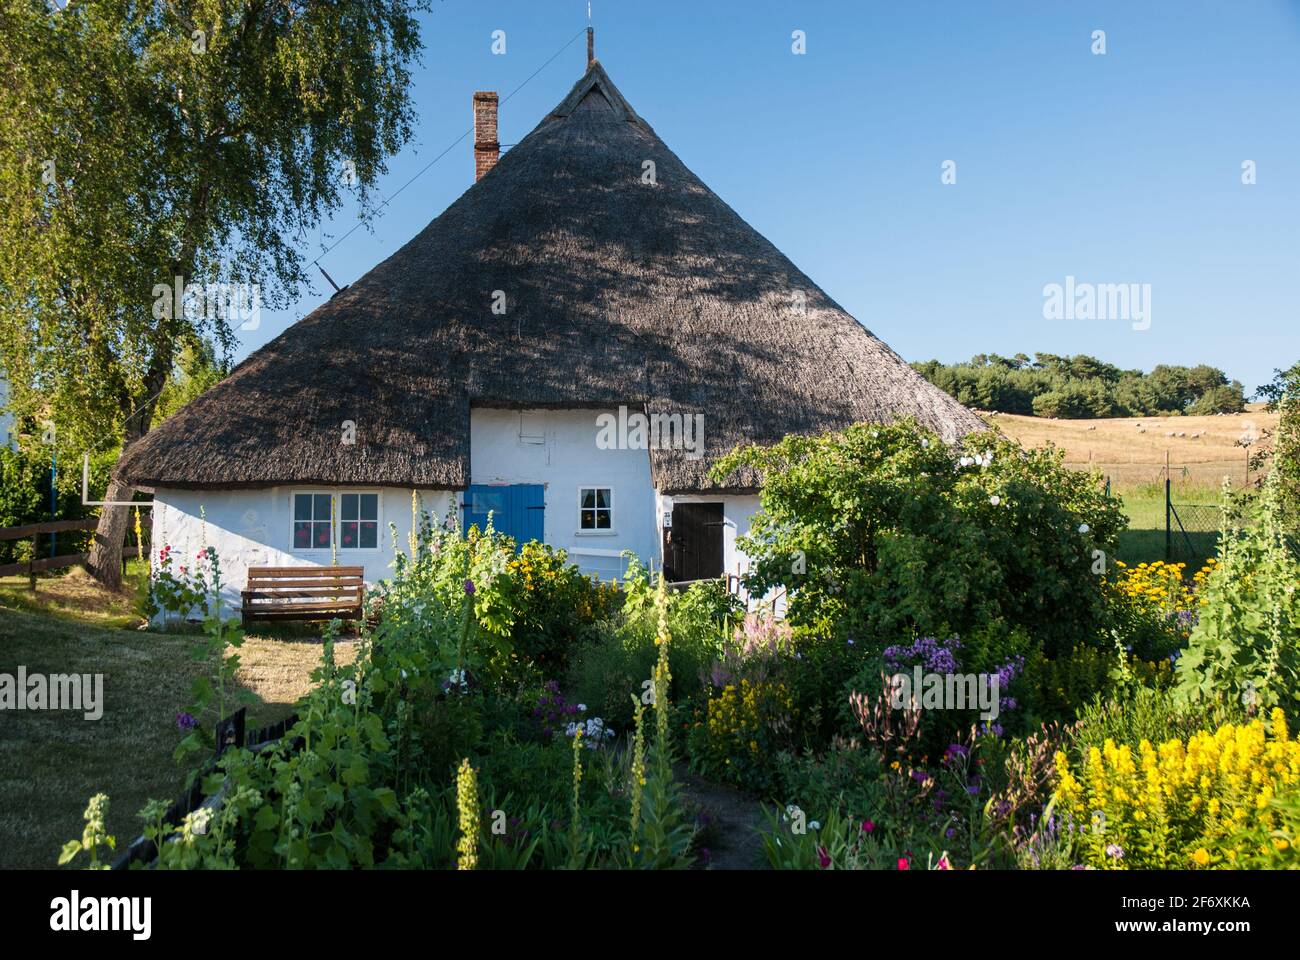 La casa de la viuda del pastor de Groß Zicker es una de las casas más antiguas de la isla de Rügen Foto de stock